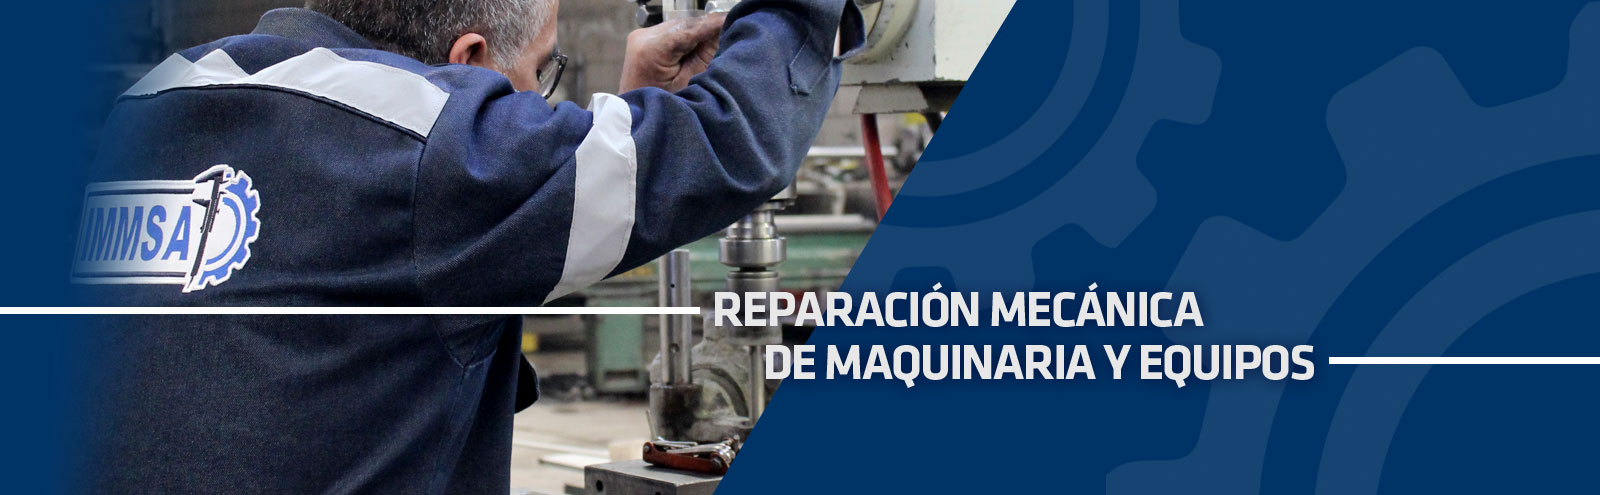 IMMSA Ingeniería En Metal Metalmecánica - Reparación mecánica de maquinaria y equipos